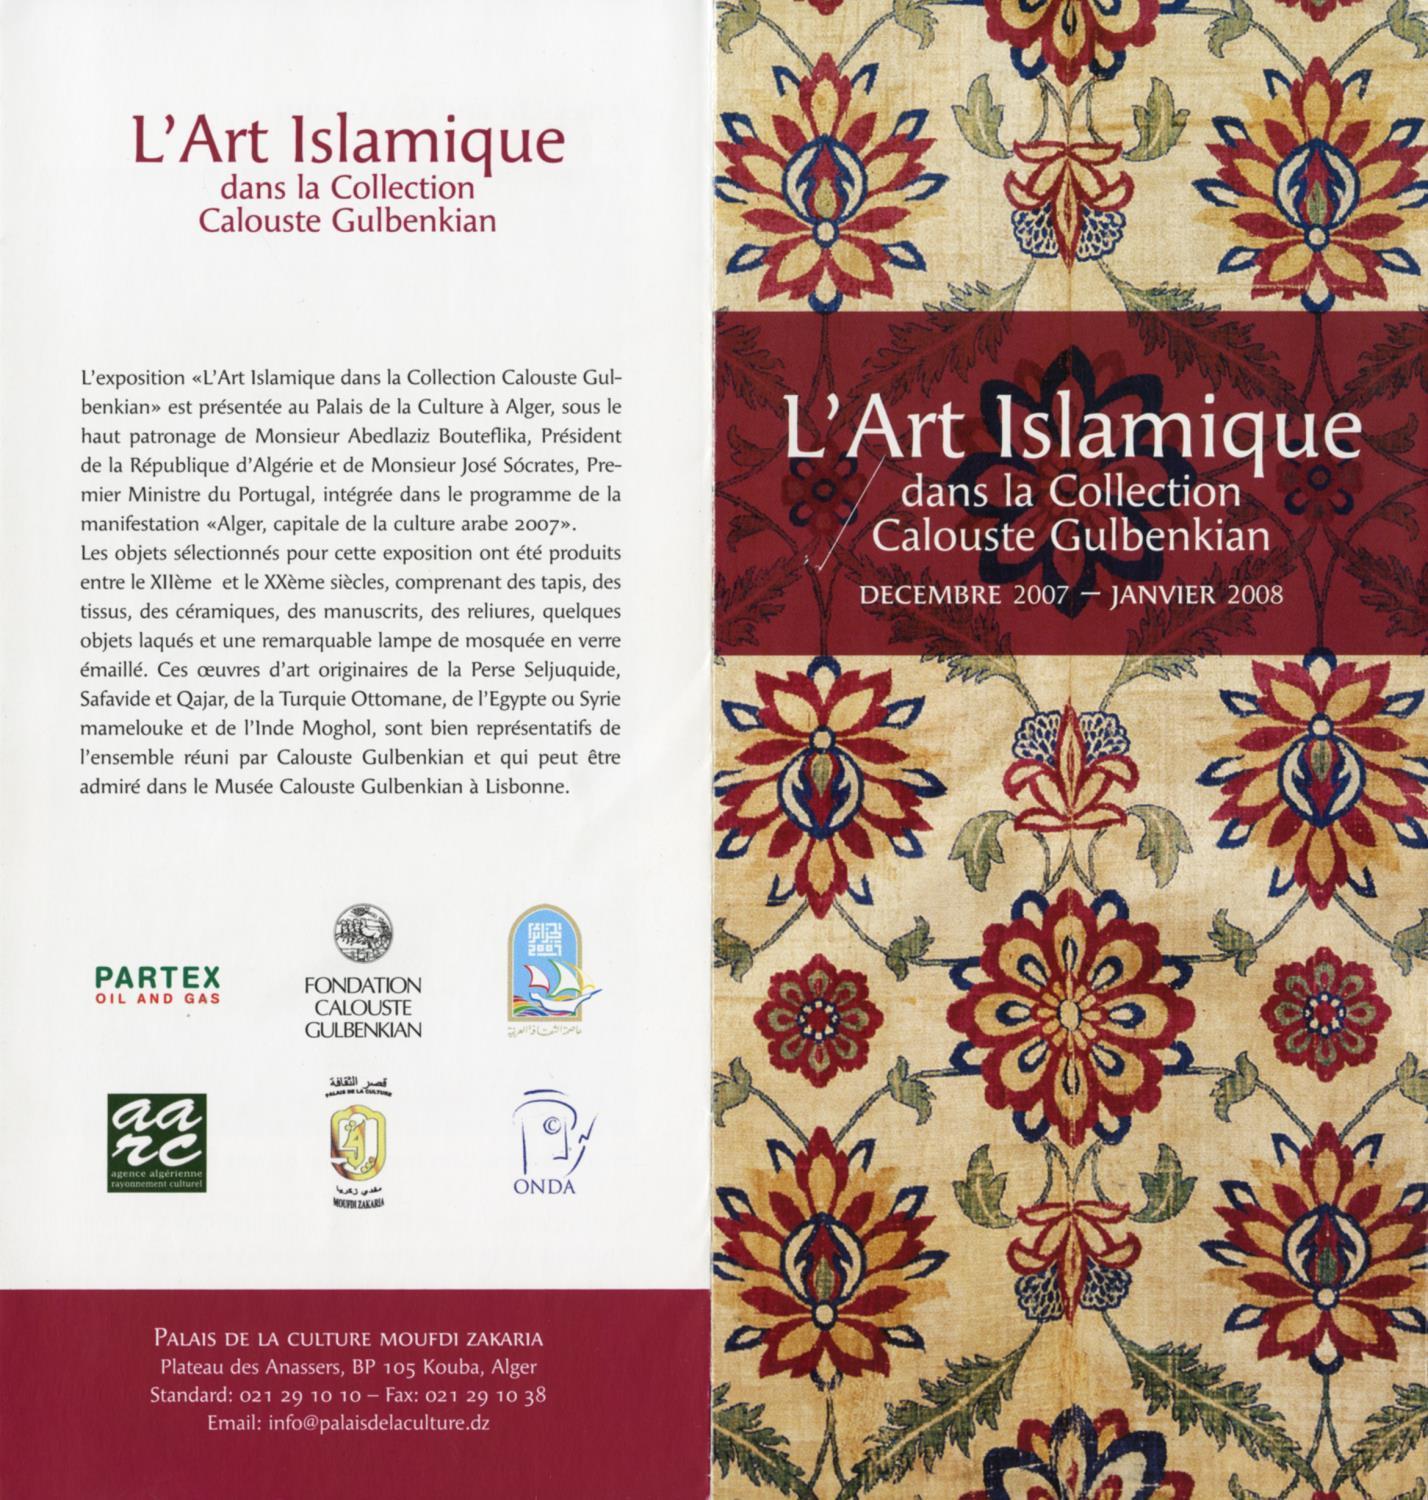 L'Art Islamique dans la Collection Calouste Gulbenkian